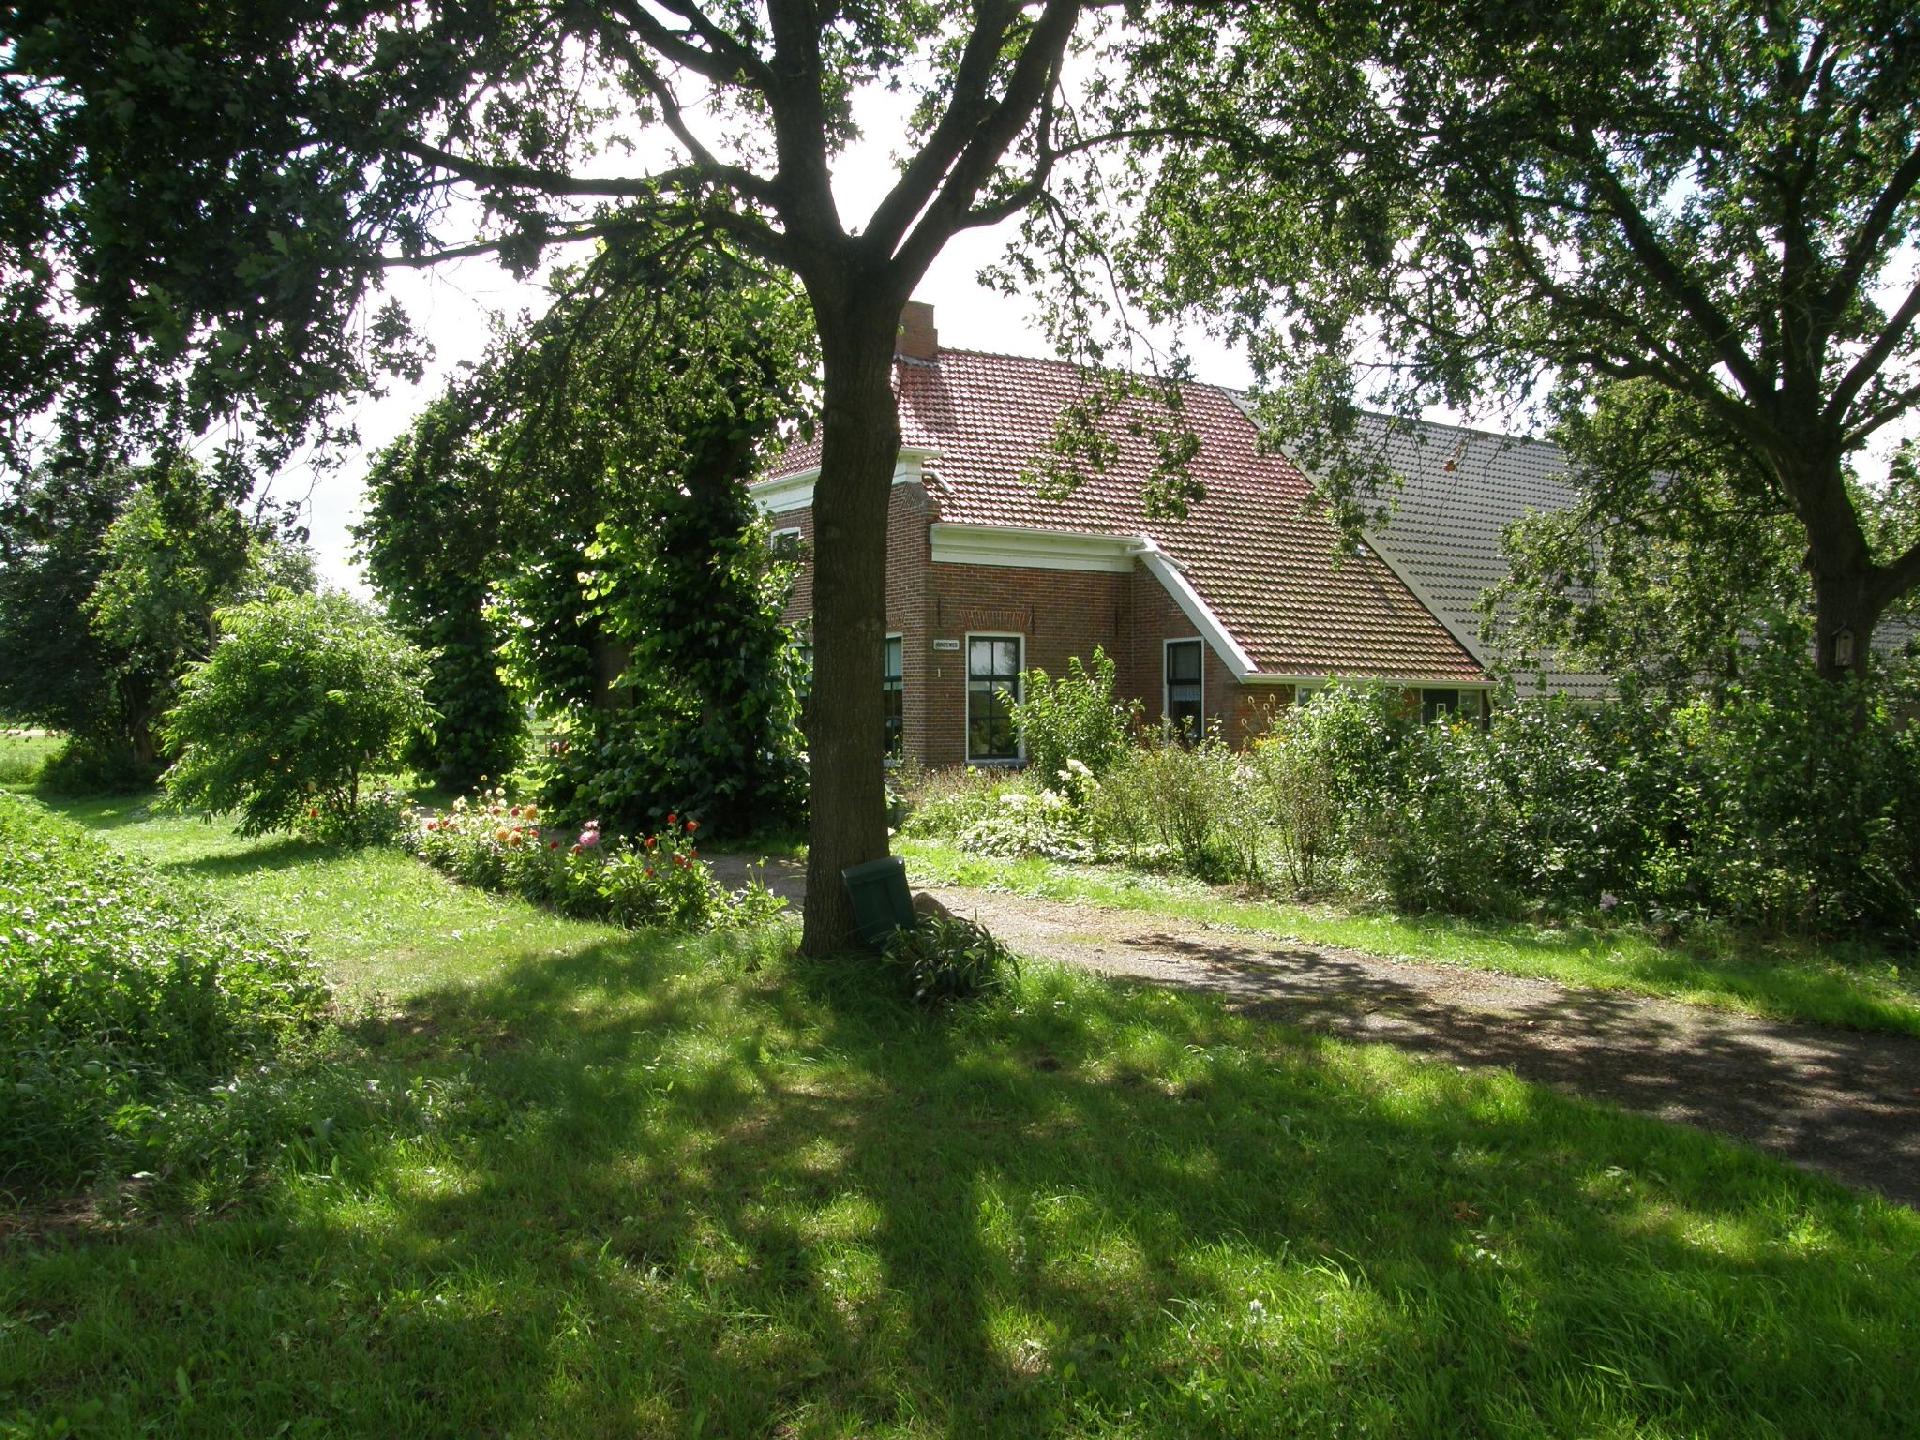 Urlaub wie früher auf einem Bauernhof mit dem Ferienhaus in den Niederlande